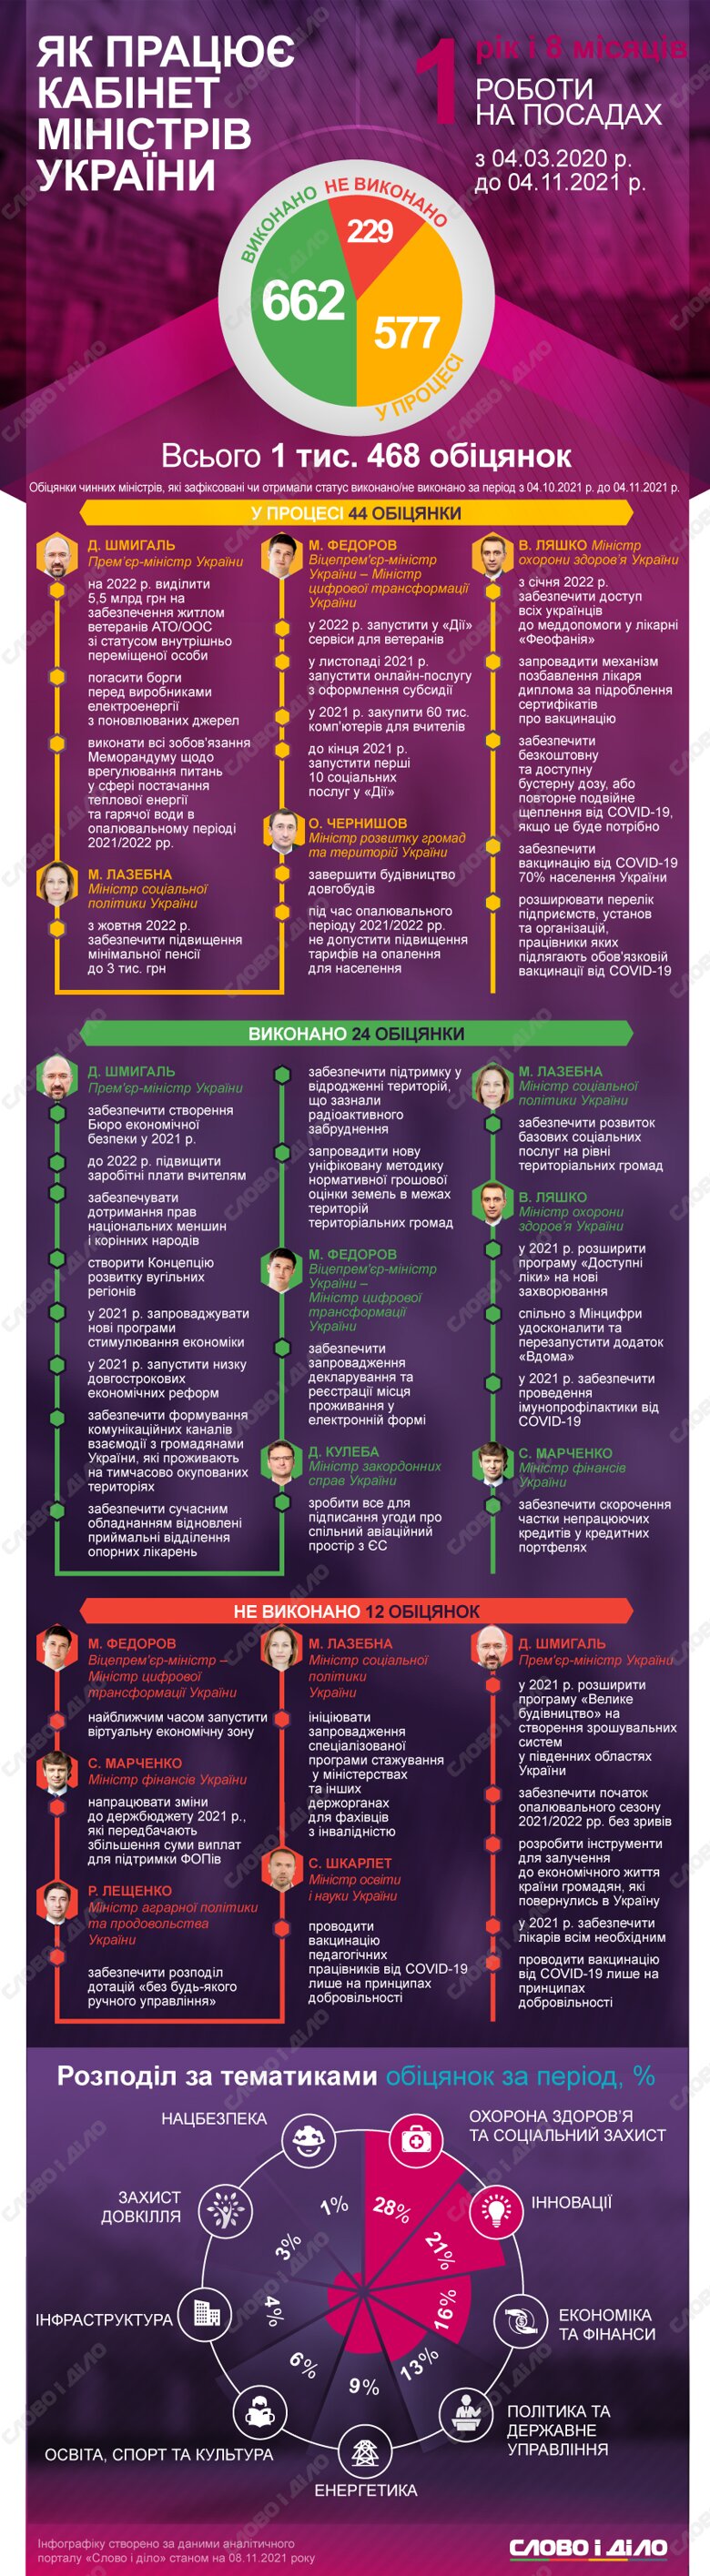 Правительство Дениса Шмыгаля за месяц выполнило 24 обещания, провалило – 12. Кроме того, министры дали 44 новых обещания.